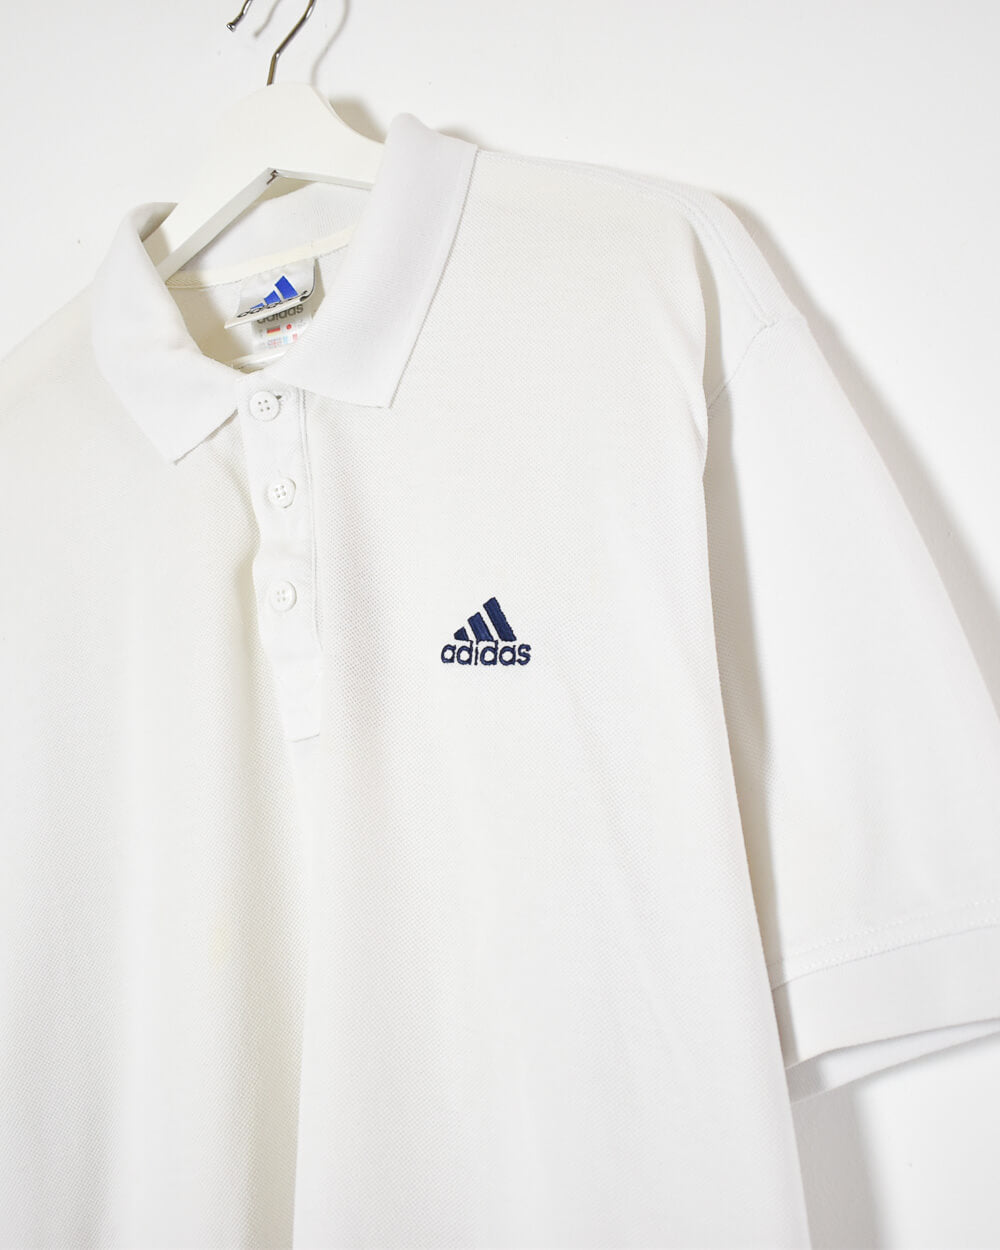 White Adidas Polo Shirt - Large